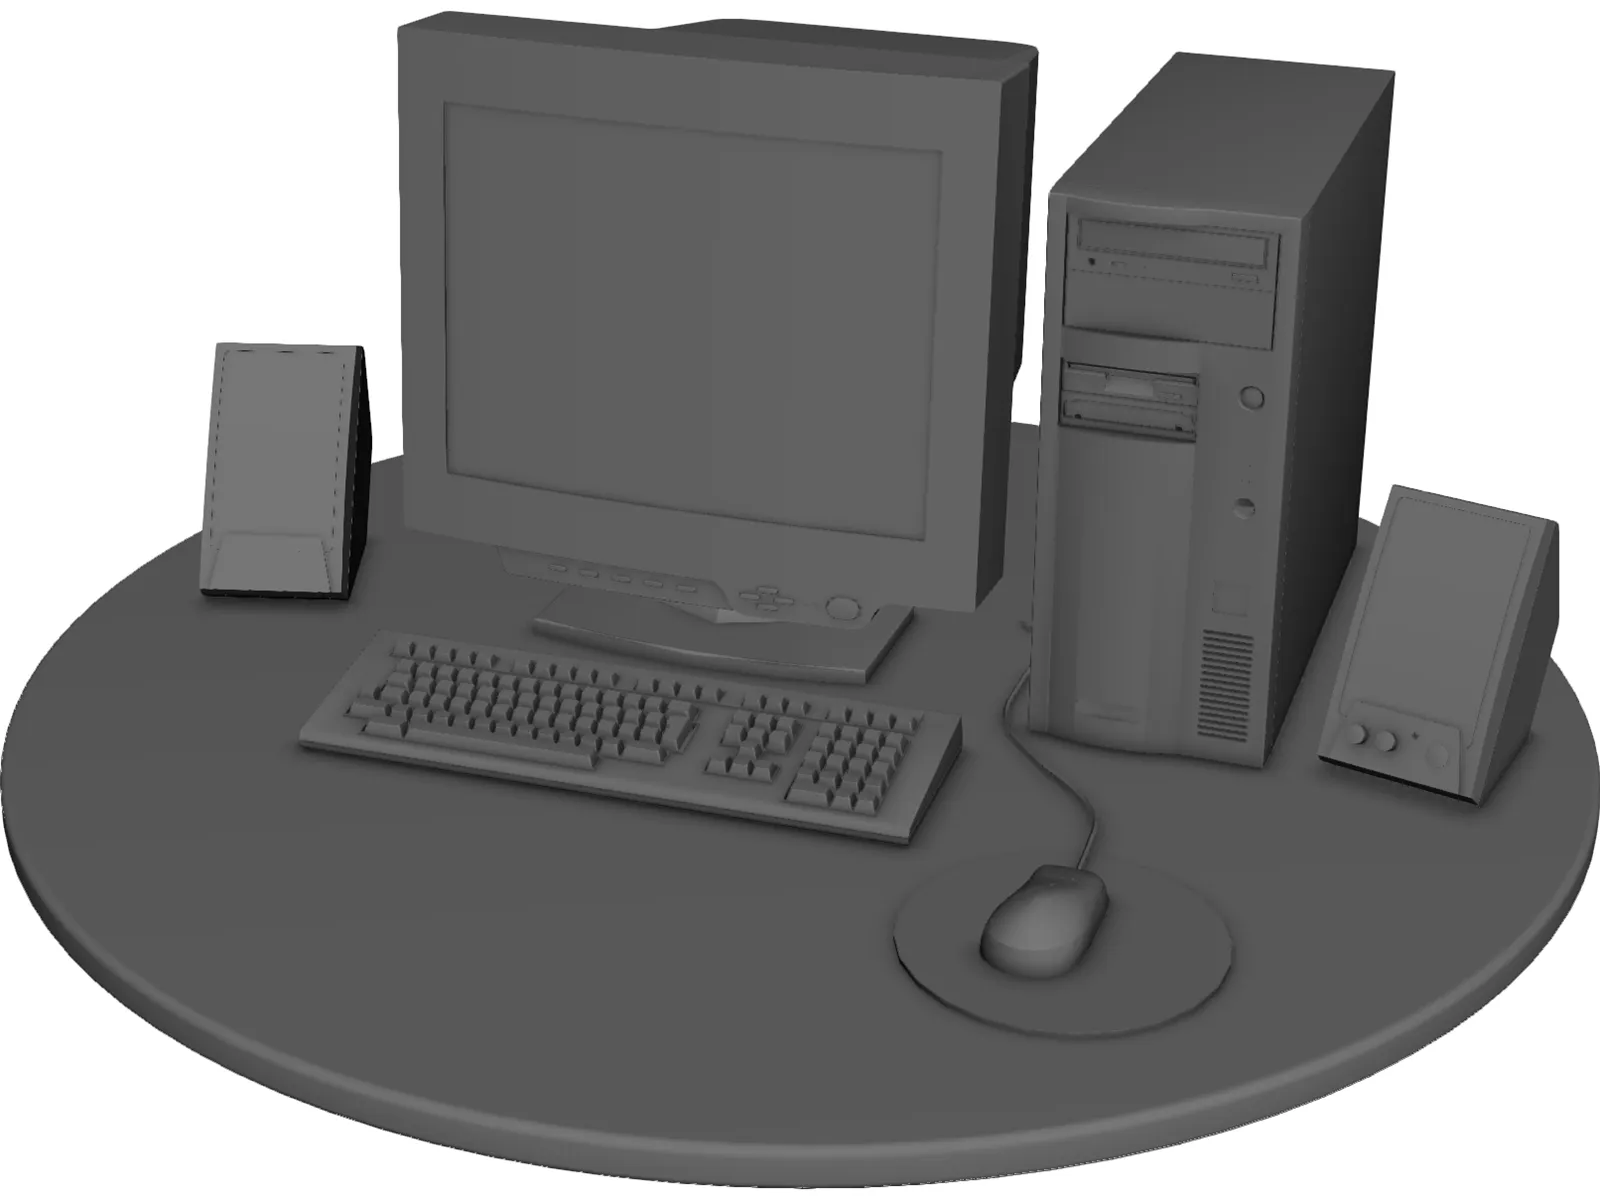 3d computer images